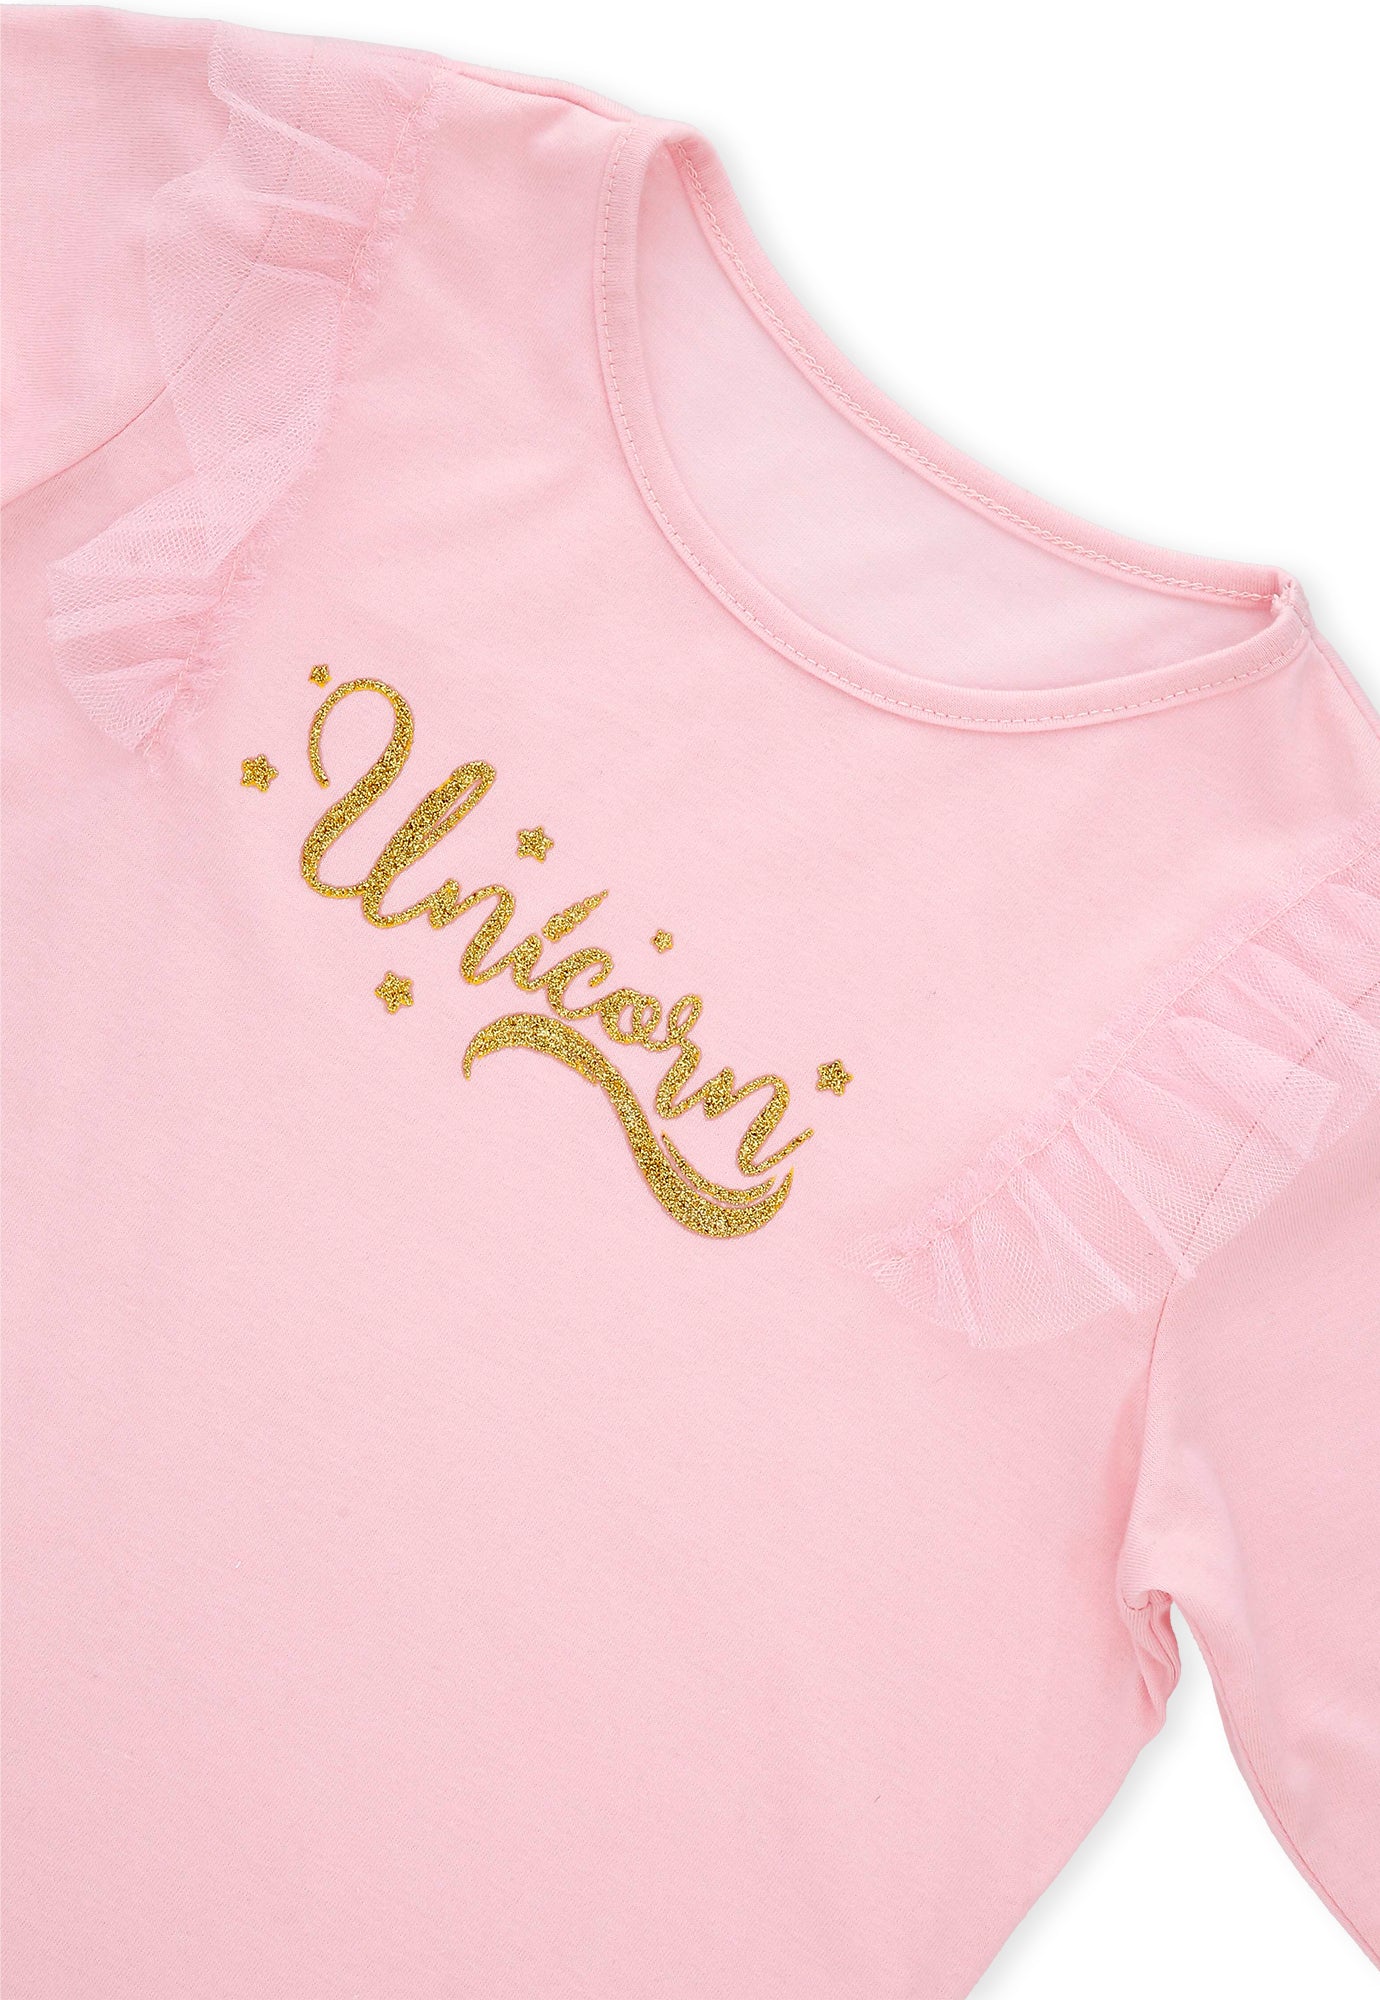 Camiseta rosada clara manga larga, tull sobrepuesto y estampado en frente para bebé niña